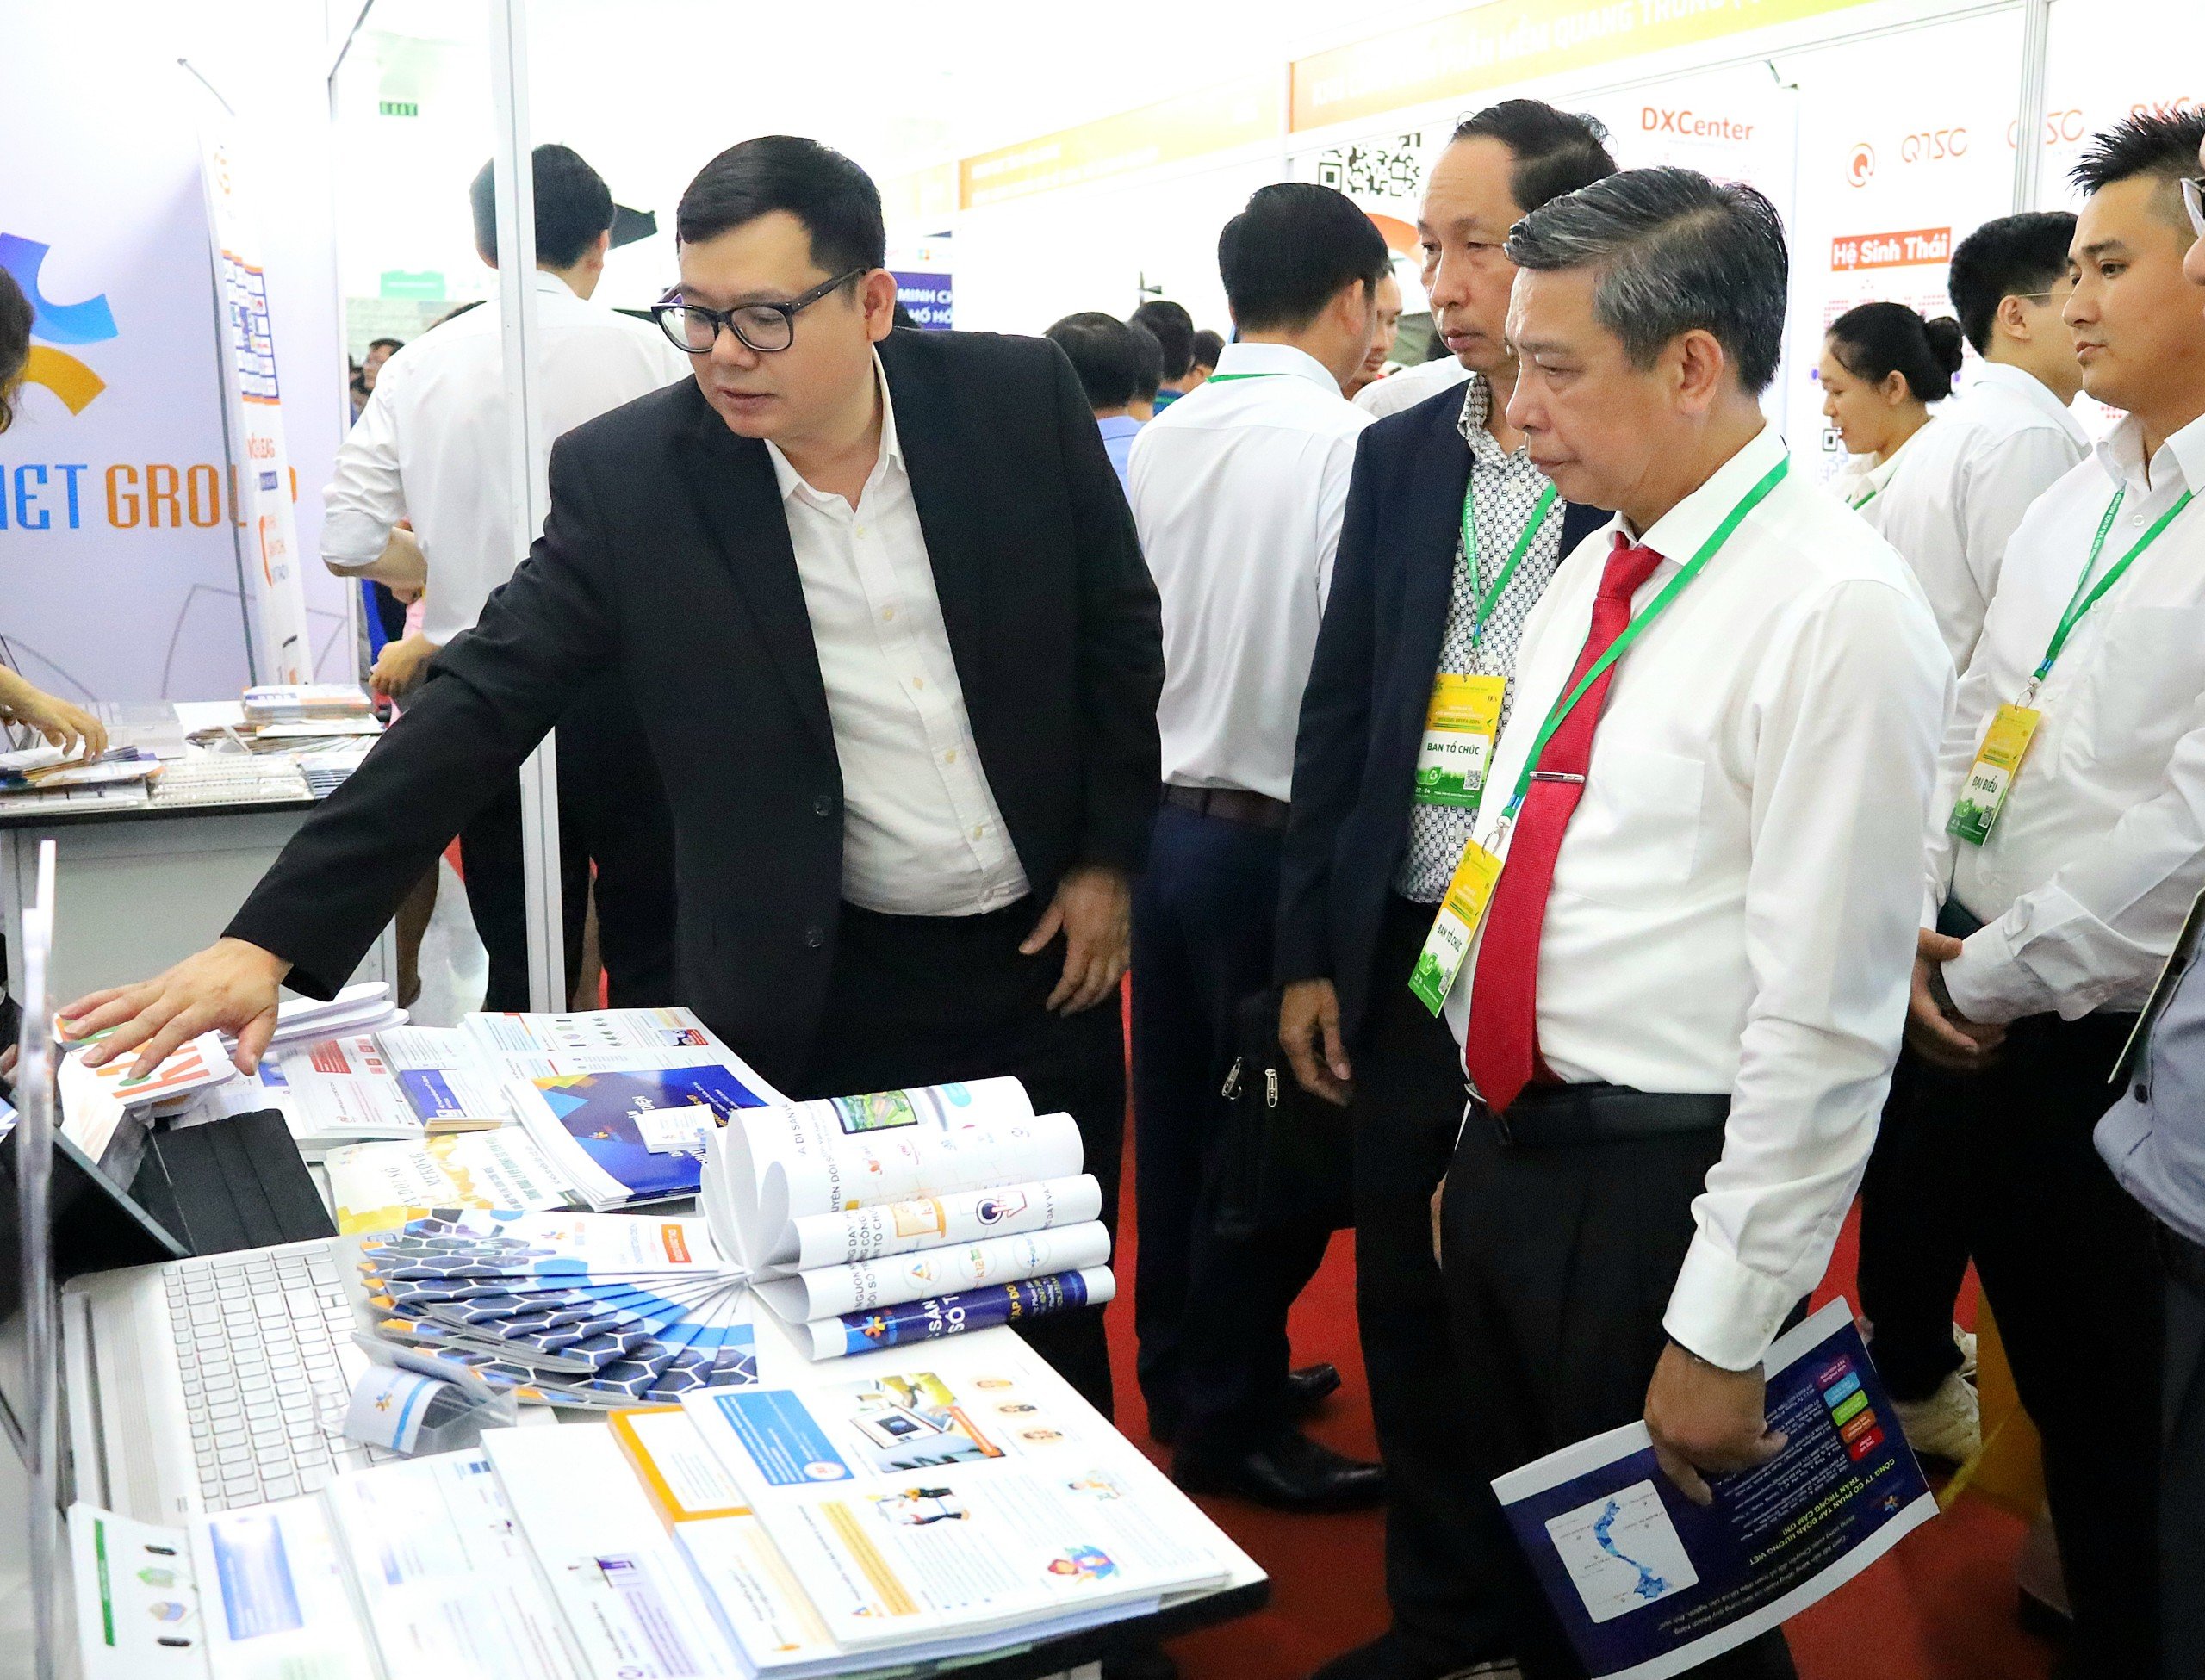 Ông Đồng Văn Thanh - Phó Bí thư Tỉnh ủy, Chủ tịch UBND tỉnh Hậu Giang tham quan khu vực trưng bày sản phẩm công nghệ.